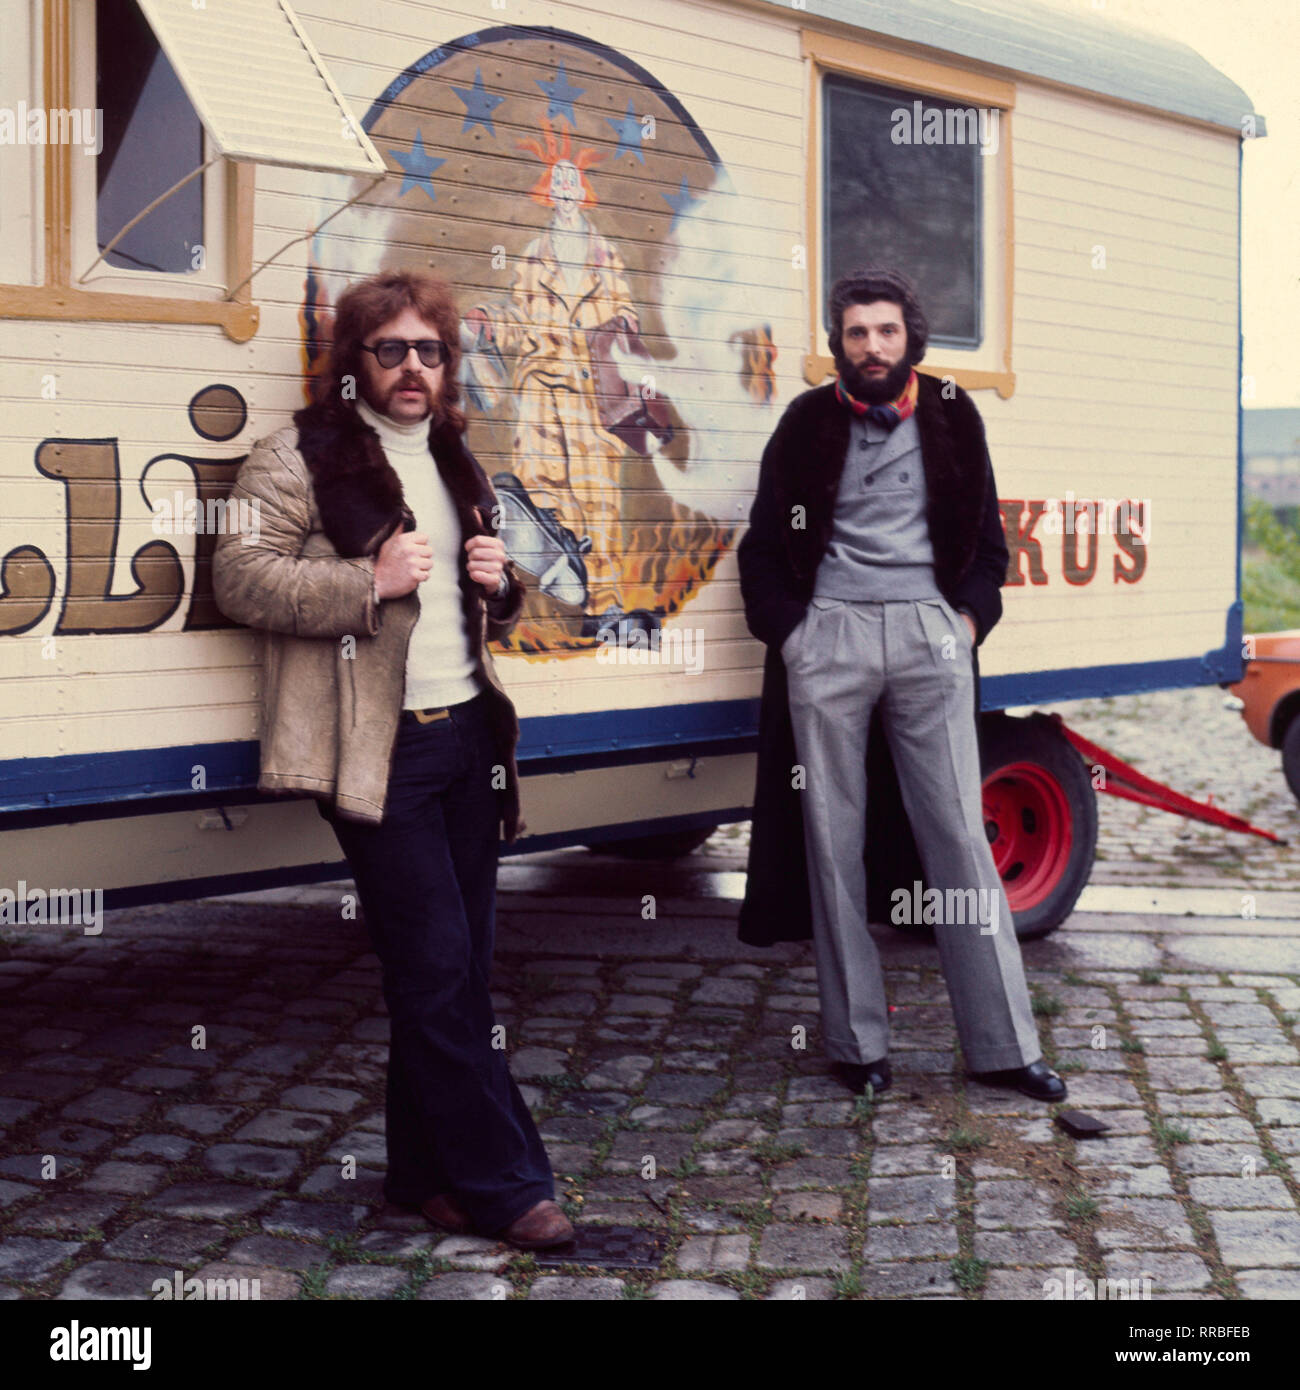 CIRCUS RONCALLI - ANDRE HELLER und BERNHARD PAUL, im Bild vor einem alten Zirkuswagen, gründeten am 18. Mai 1976 den Circus Roncalli. Andre Heller stieg bereits ein Jahr später wieder aus. / Überschrift: CIRCUS RONCALLI Stock Photo